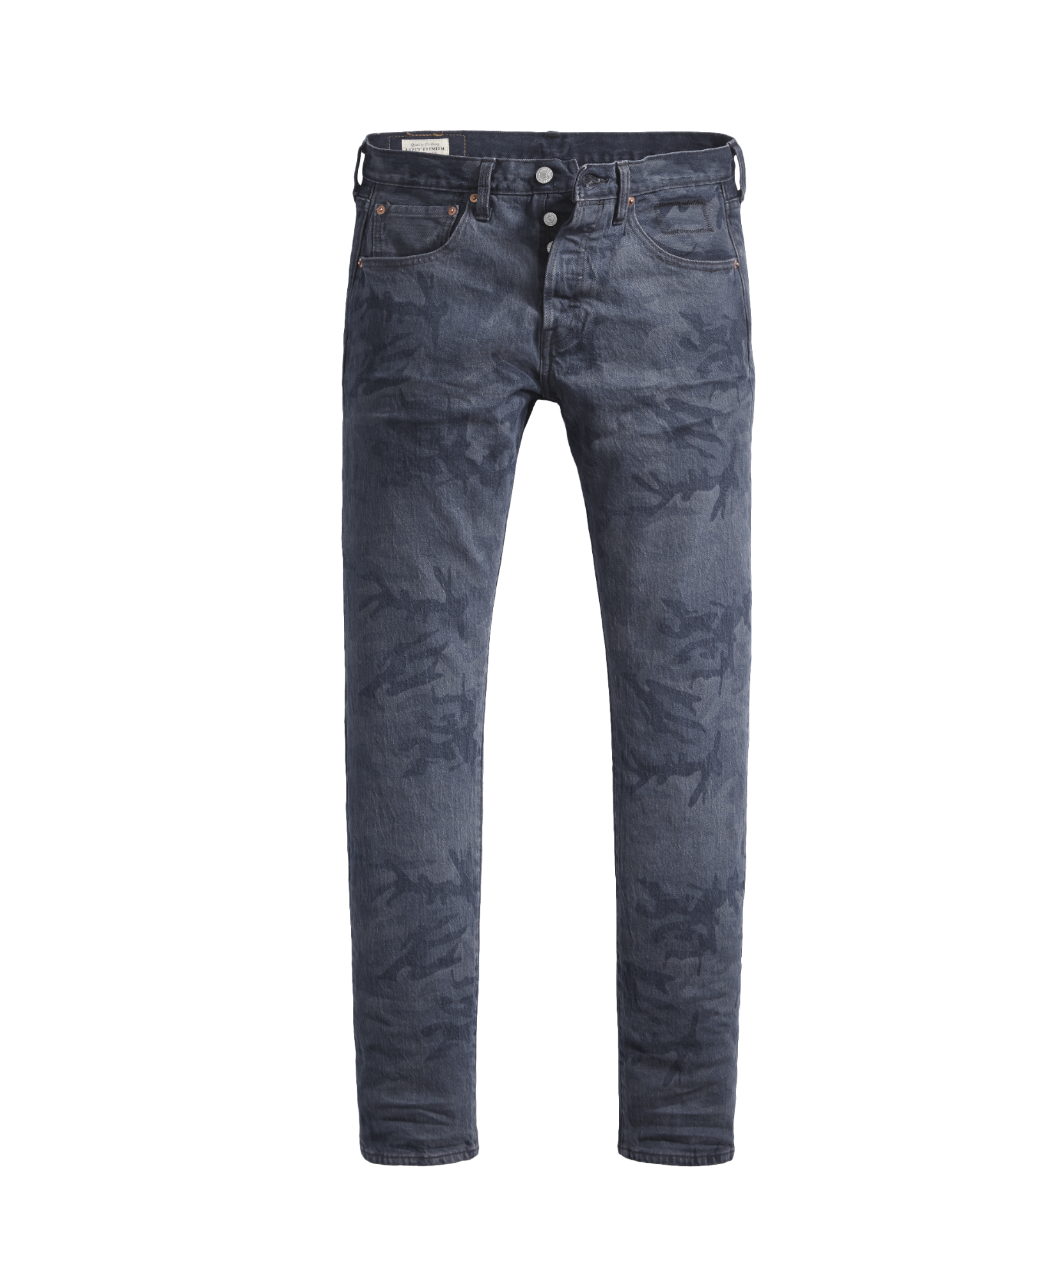 Quần jeans 501® Slim Taper với họa tiết rằn ri